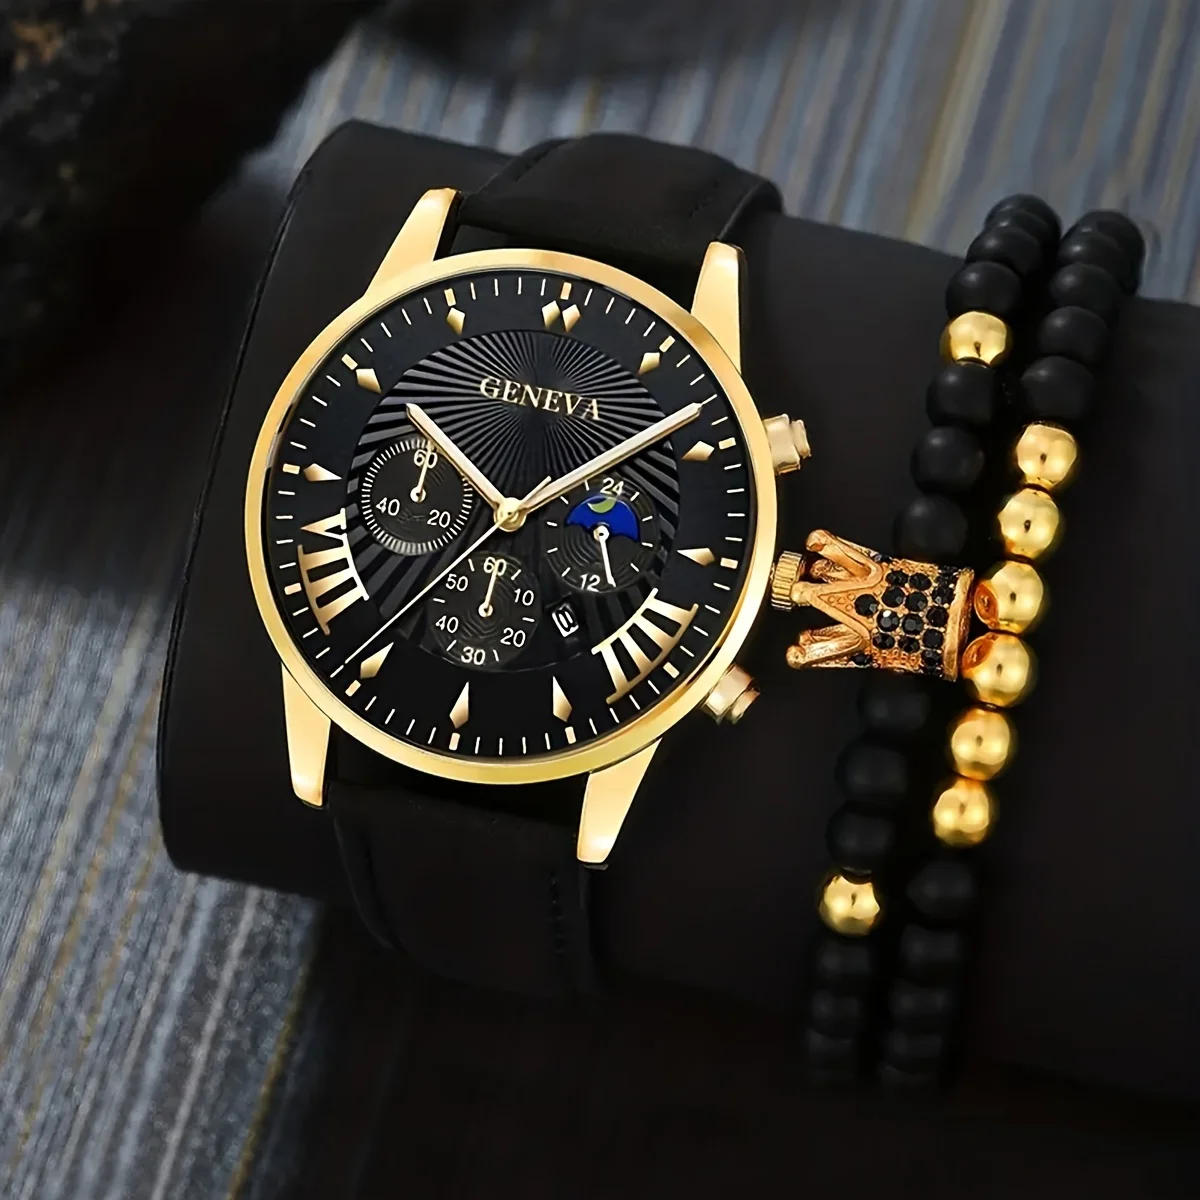 

3 шт./комплект, мужские повседневные часы с календарем и классический браслет (1 часы + 2 браслета), идеальный выбор для подарка